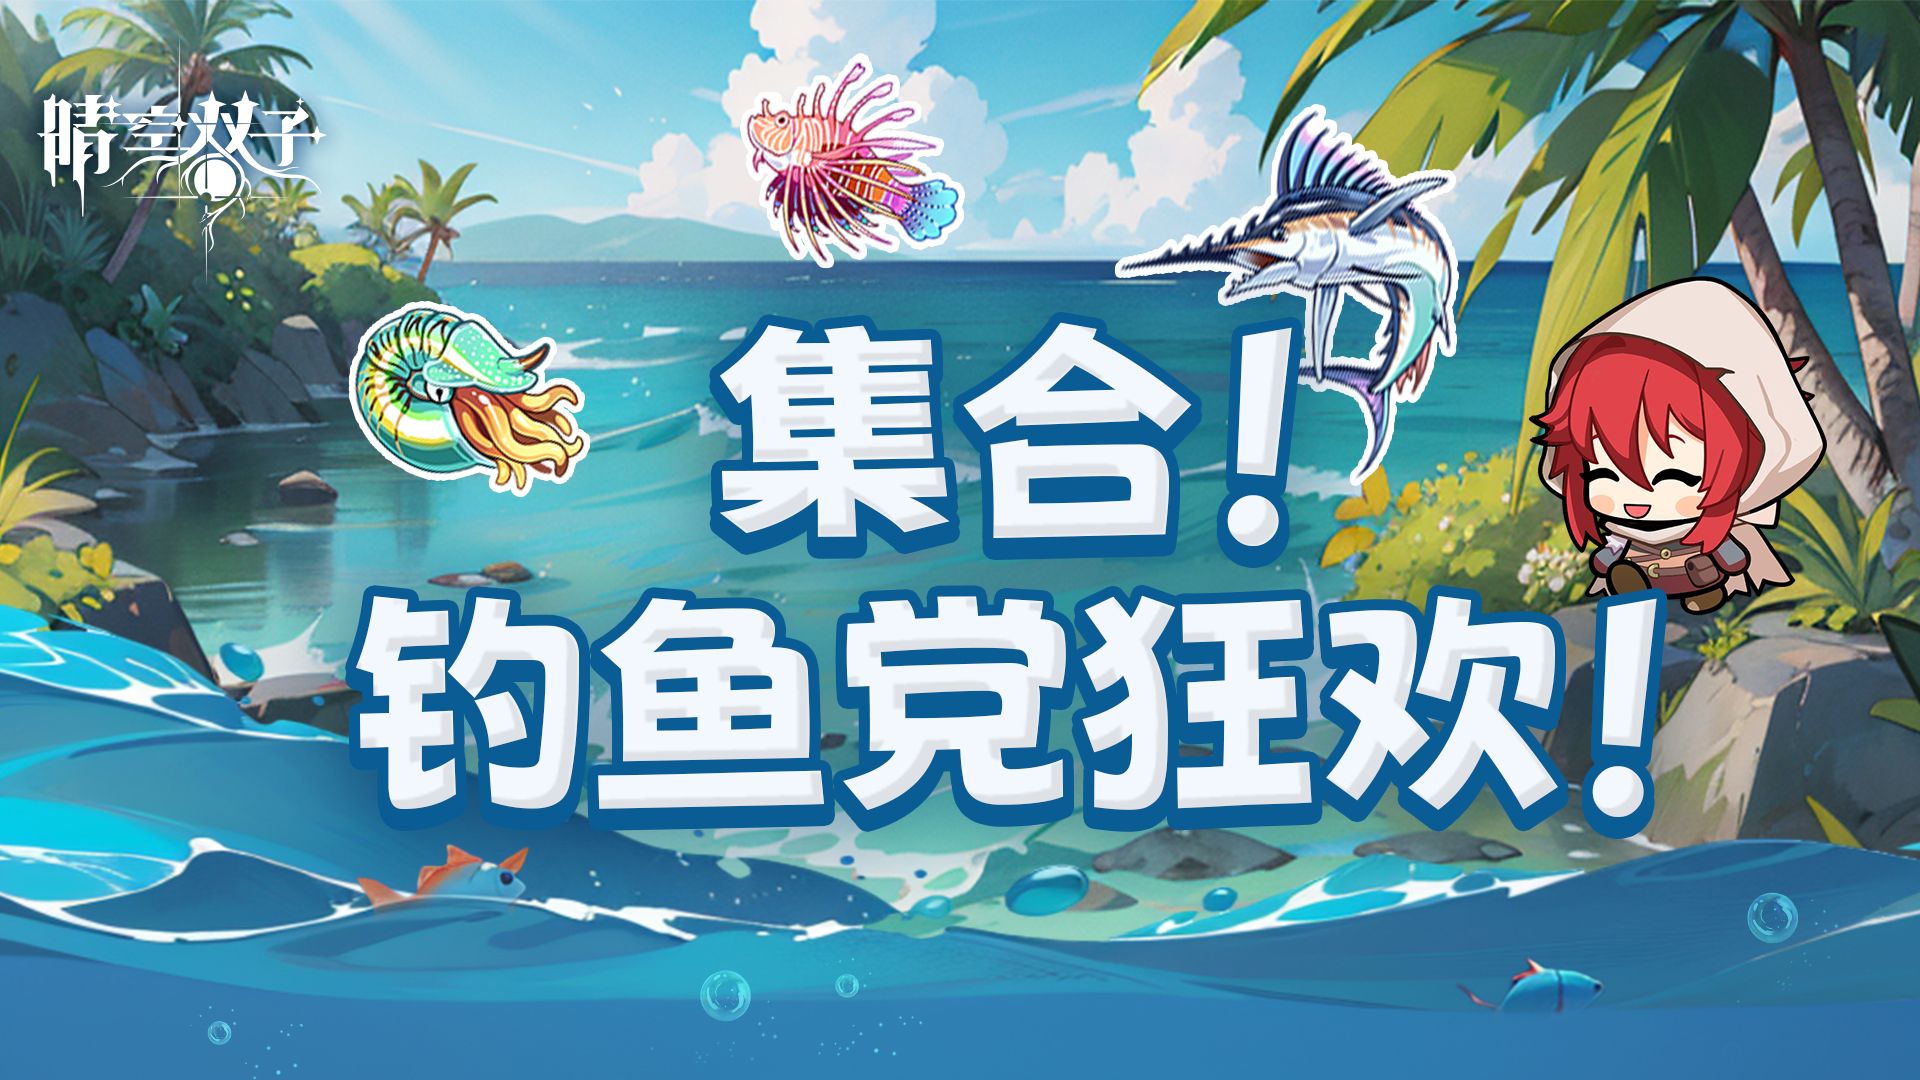 ✧新版本爆料①✧全新钓鱼系统8月23日正式上线！一起加入钓鱼发烧友的狂欢！